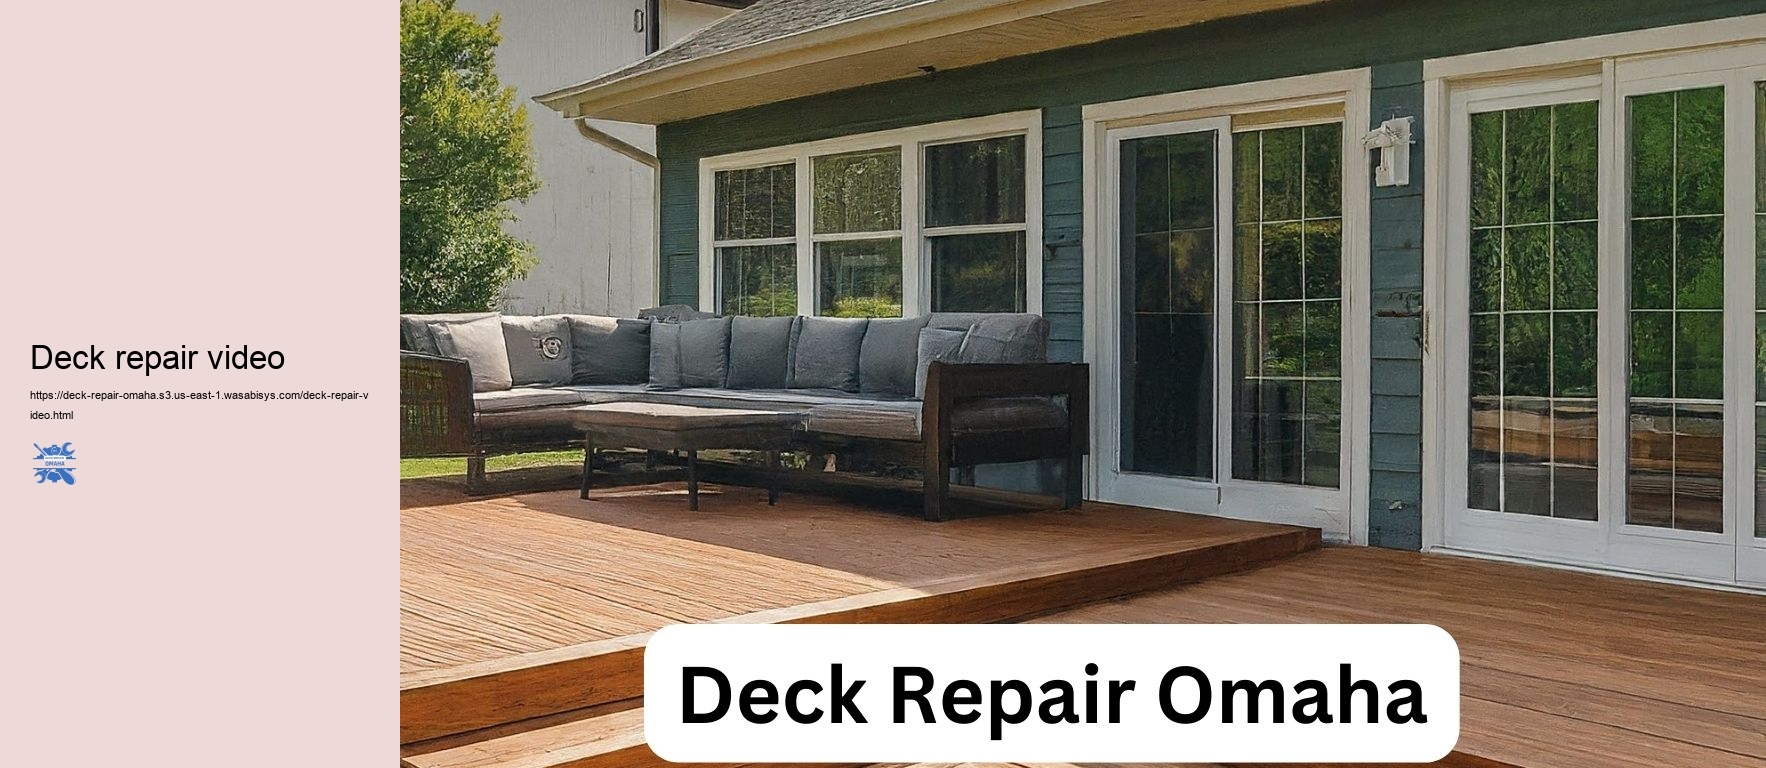 Deck repair video